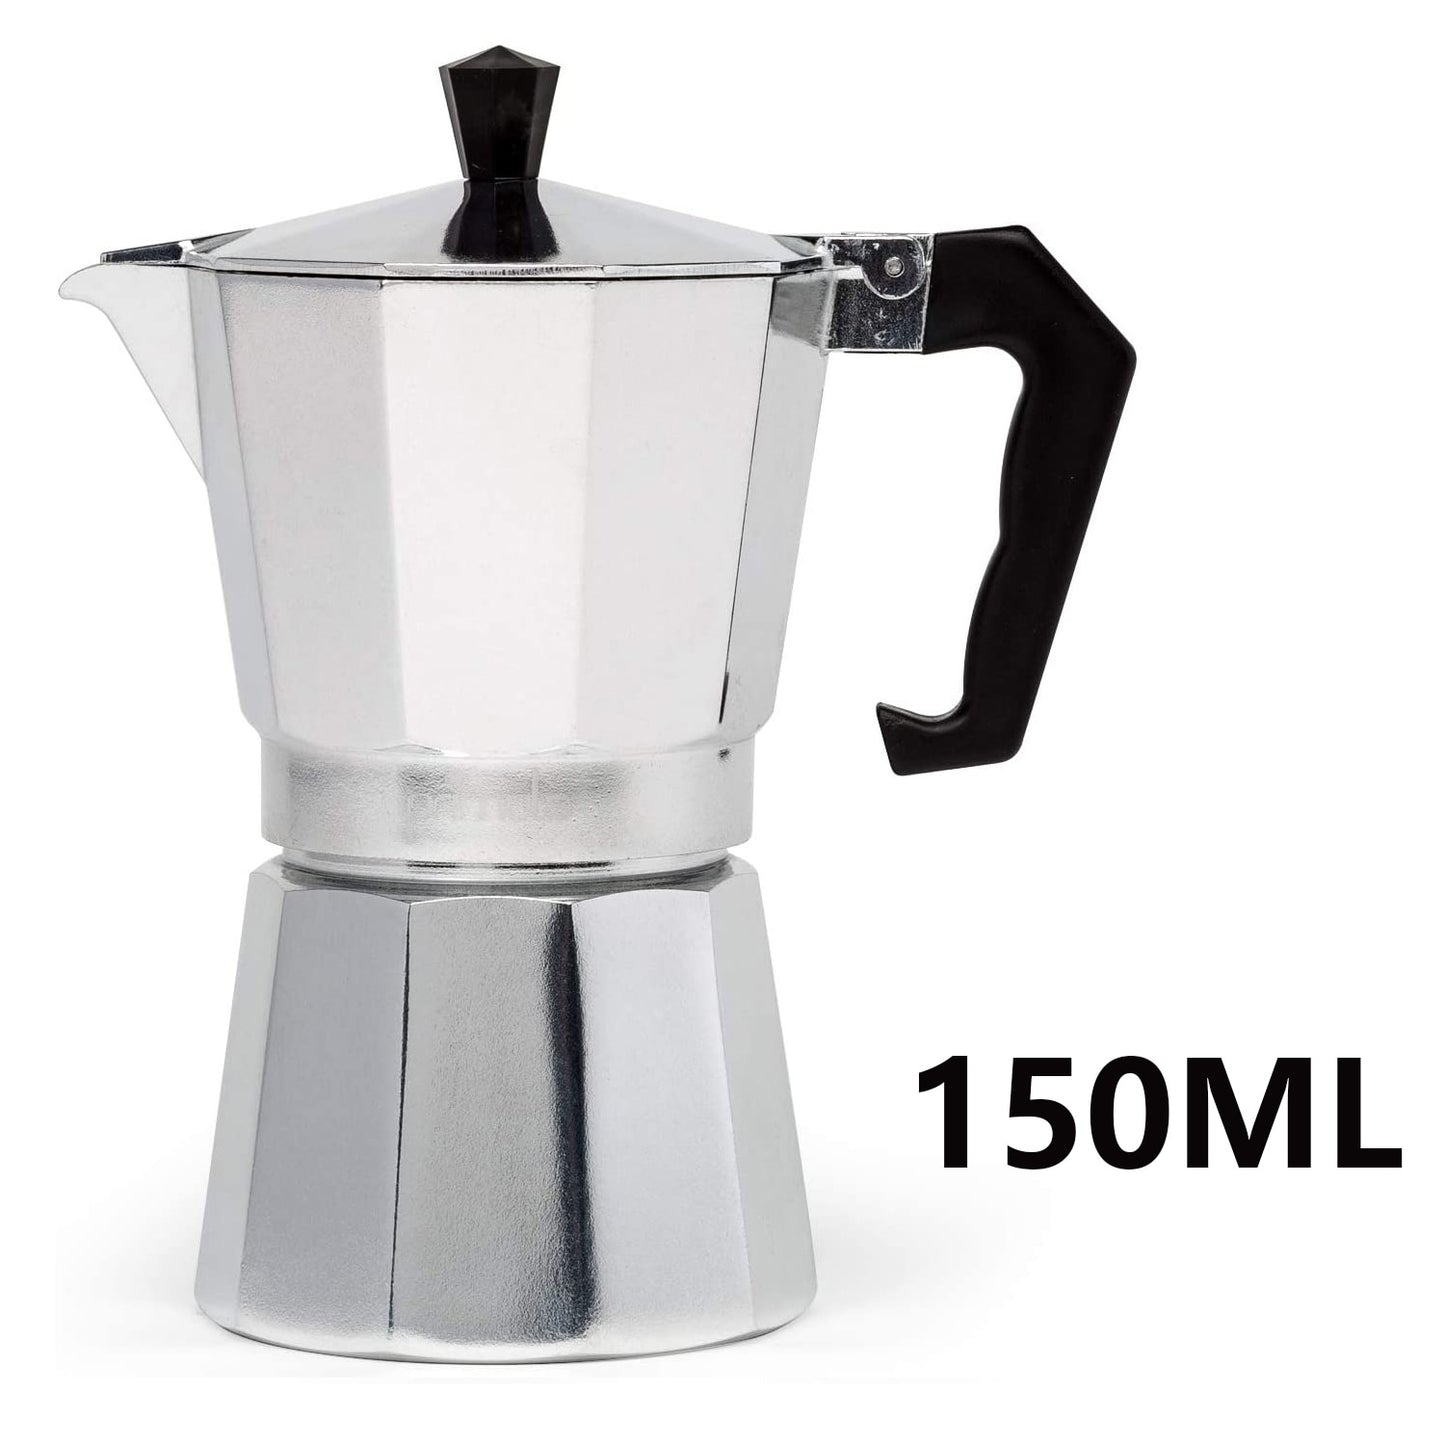 Espresso Maker, 3 Espresso Cups Moka Pot - 5 Oz (150ml) Manual